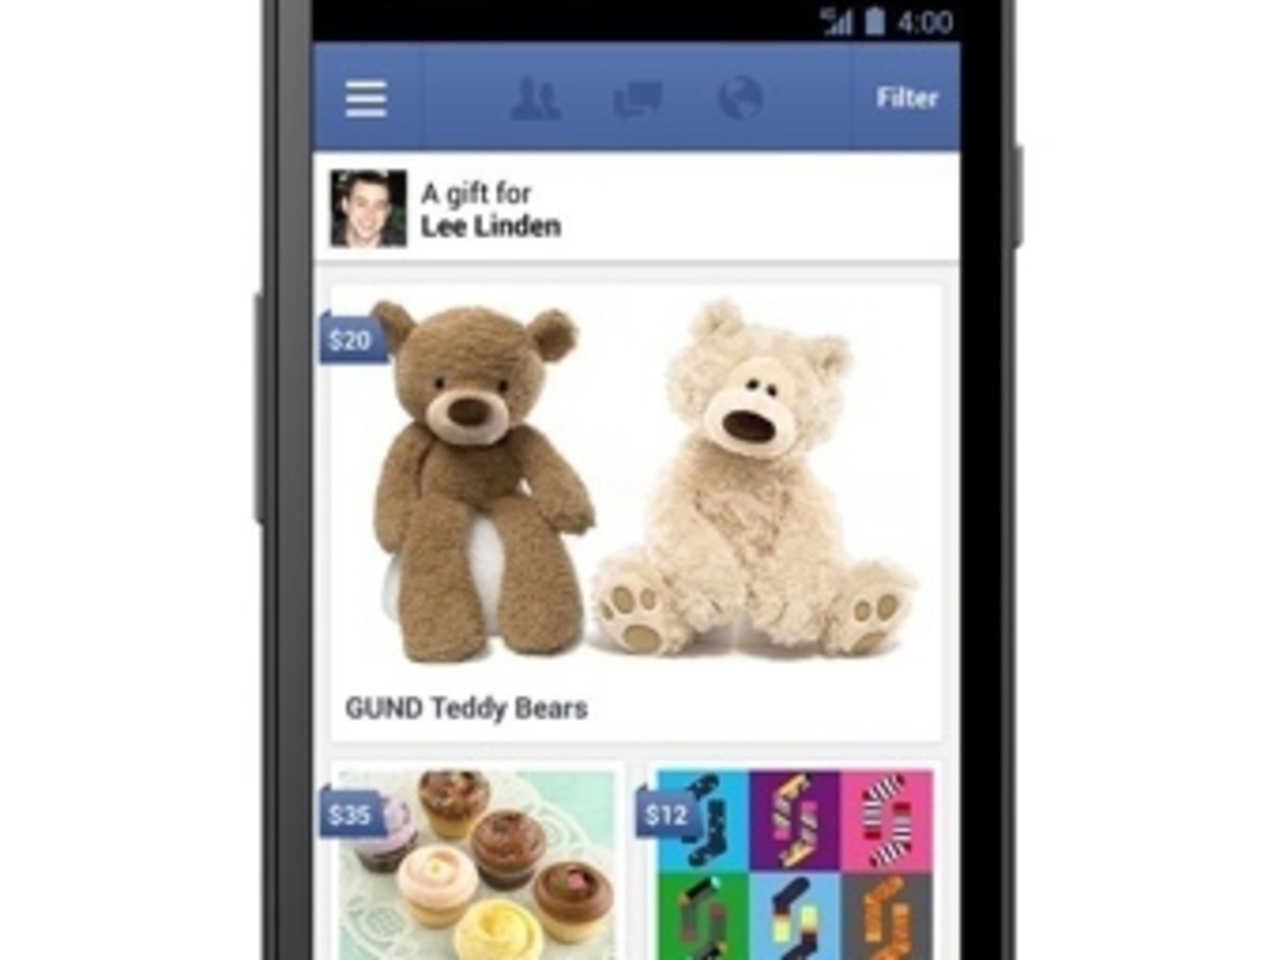 Интерфейс выбора подарков в мобильном приложении Facebook. Изображение из блога соцсети